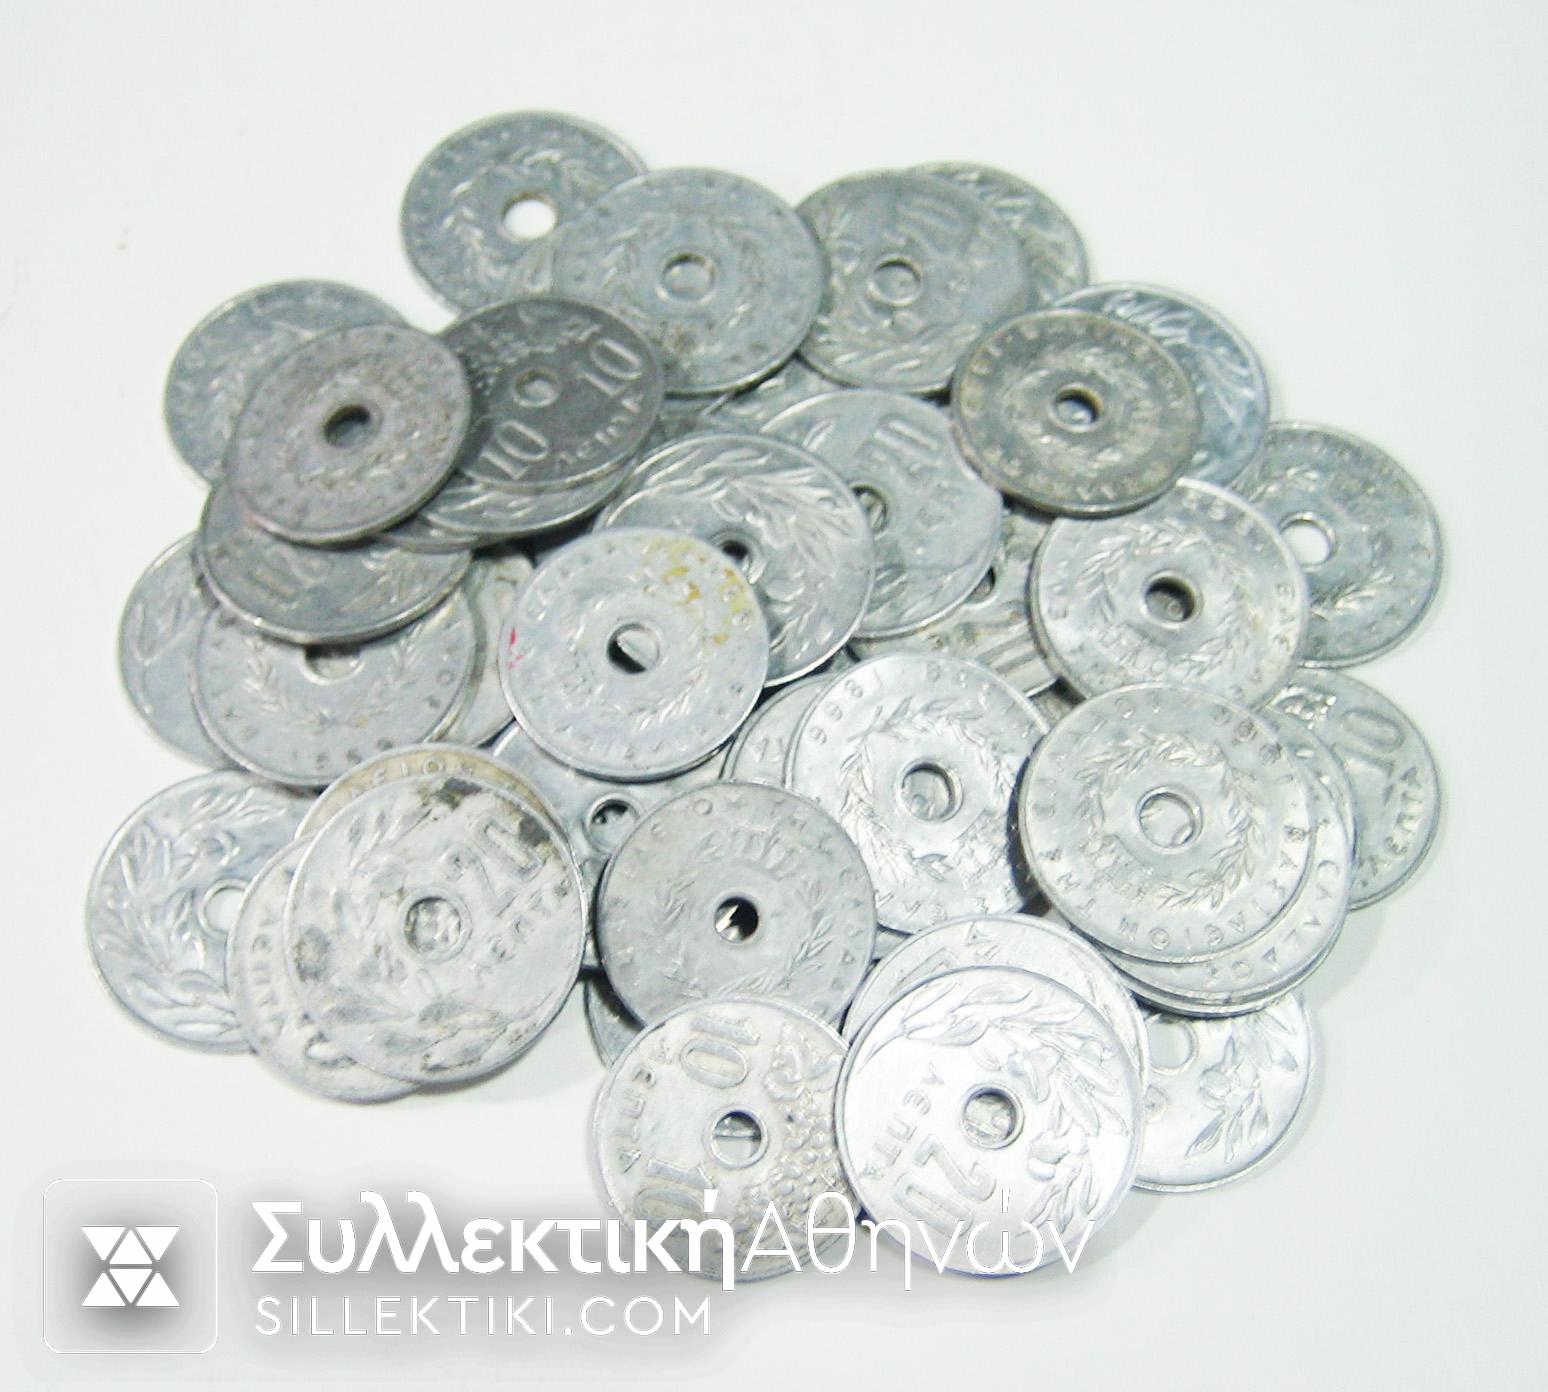 Lot of 50 aluminium coins